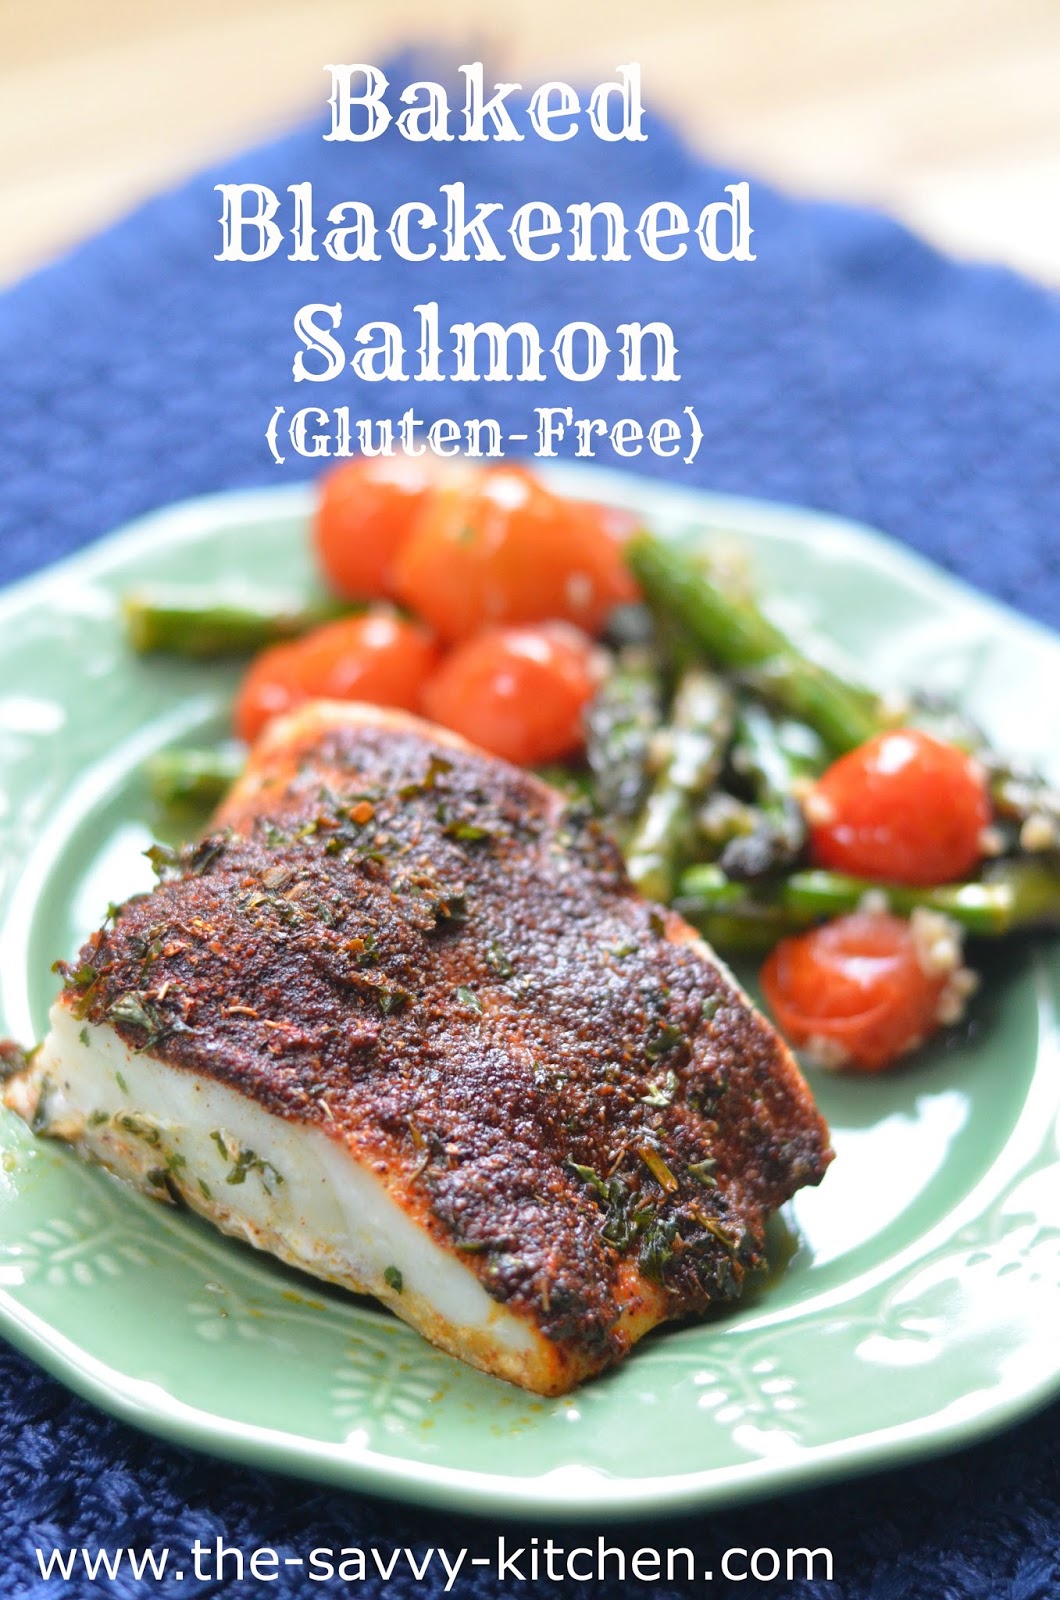 The Savvy Kitchen: Baked Blackened Salmon (Gluten-Free)